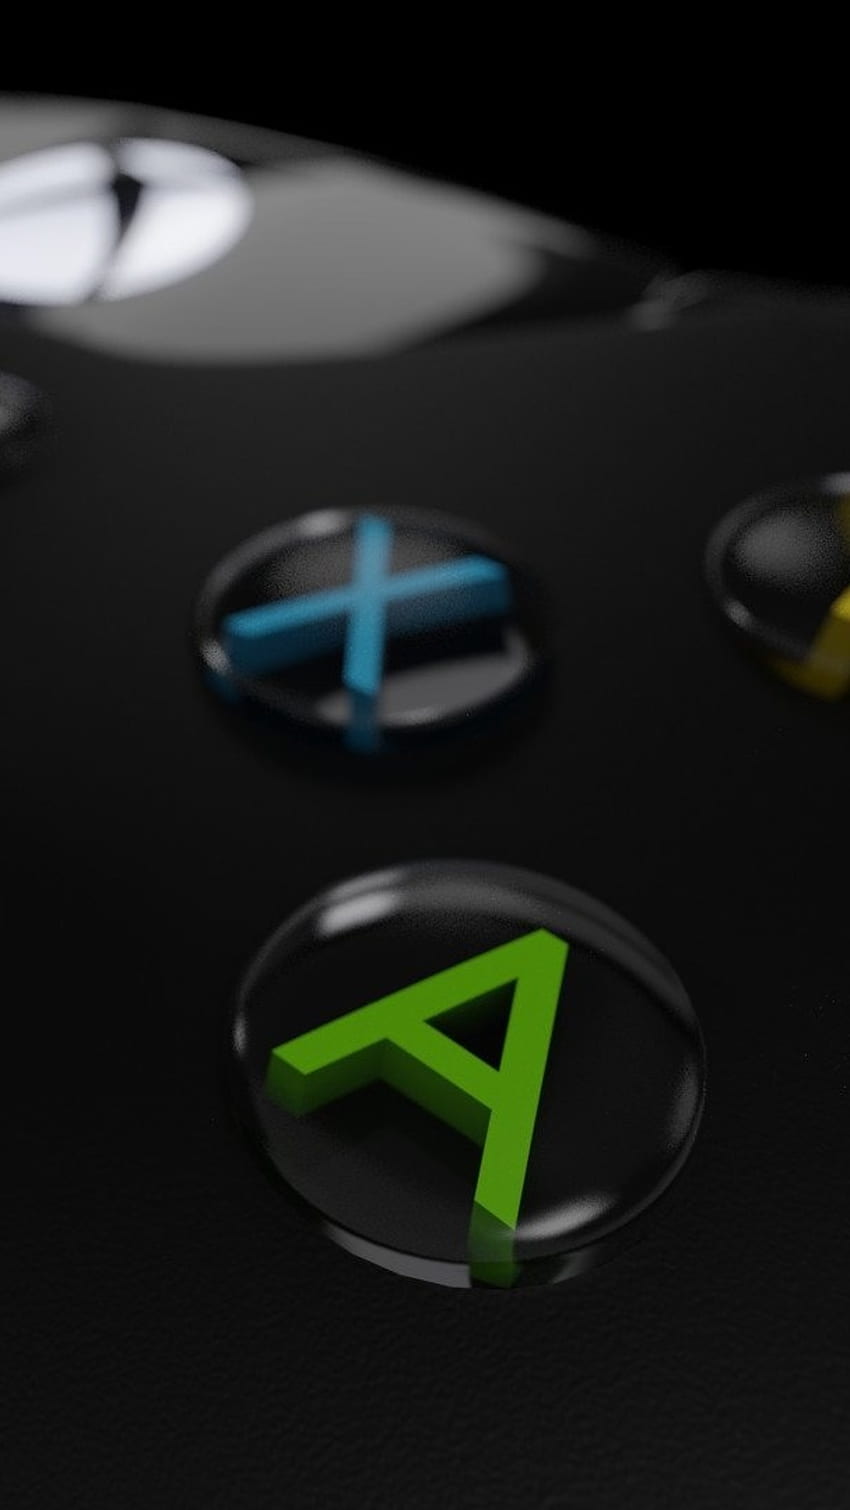 Hình nền Xbox Series S sẽ khiến bạn cảm thấy một điều gì đó đặc biệt với kiểu dáng thời trang và hiện đại. Hãy tìm hiểu về những tính năng đặc biệt của sản phẩm thông qua hình ảnh này.